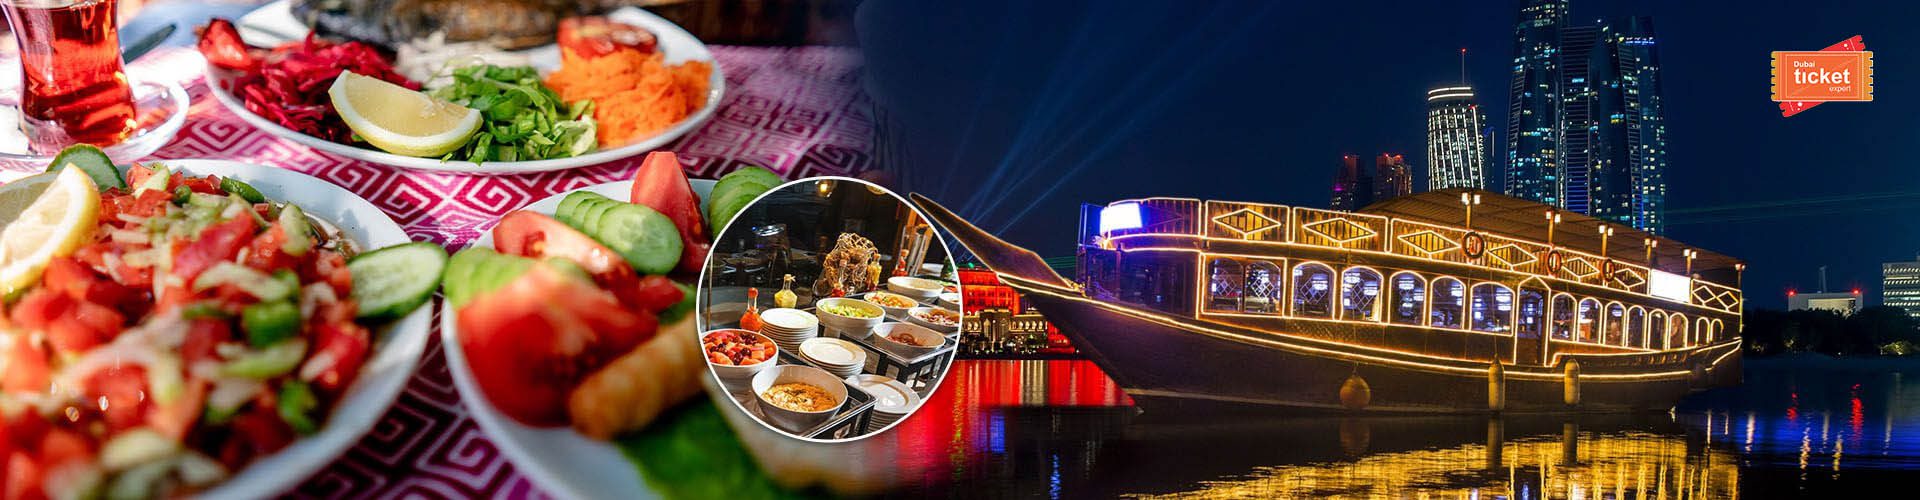 dinner cruise dubai ramadan